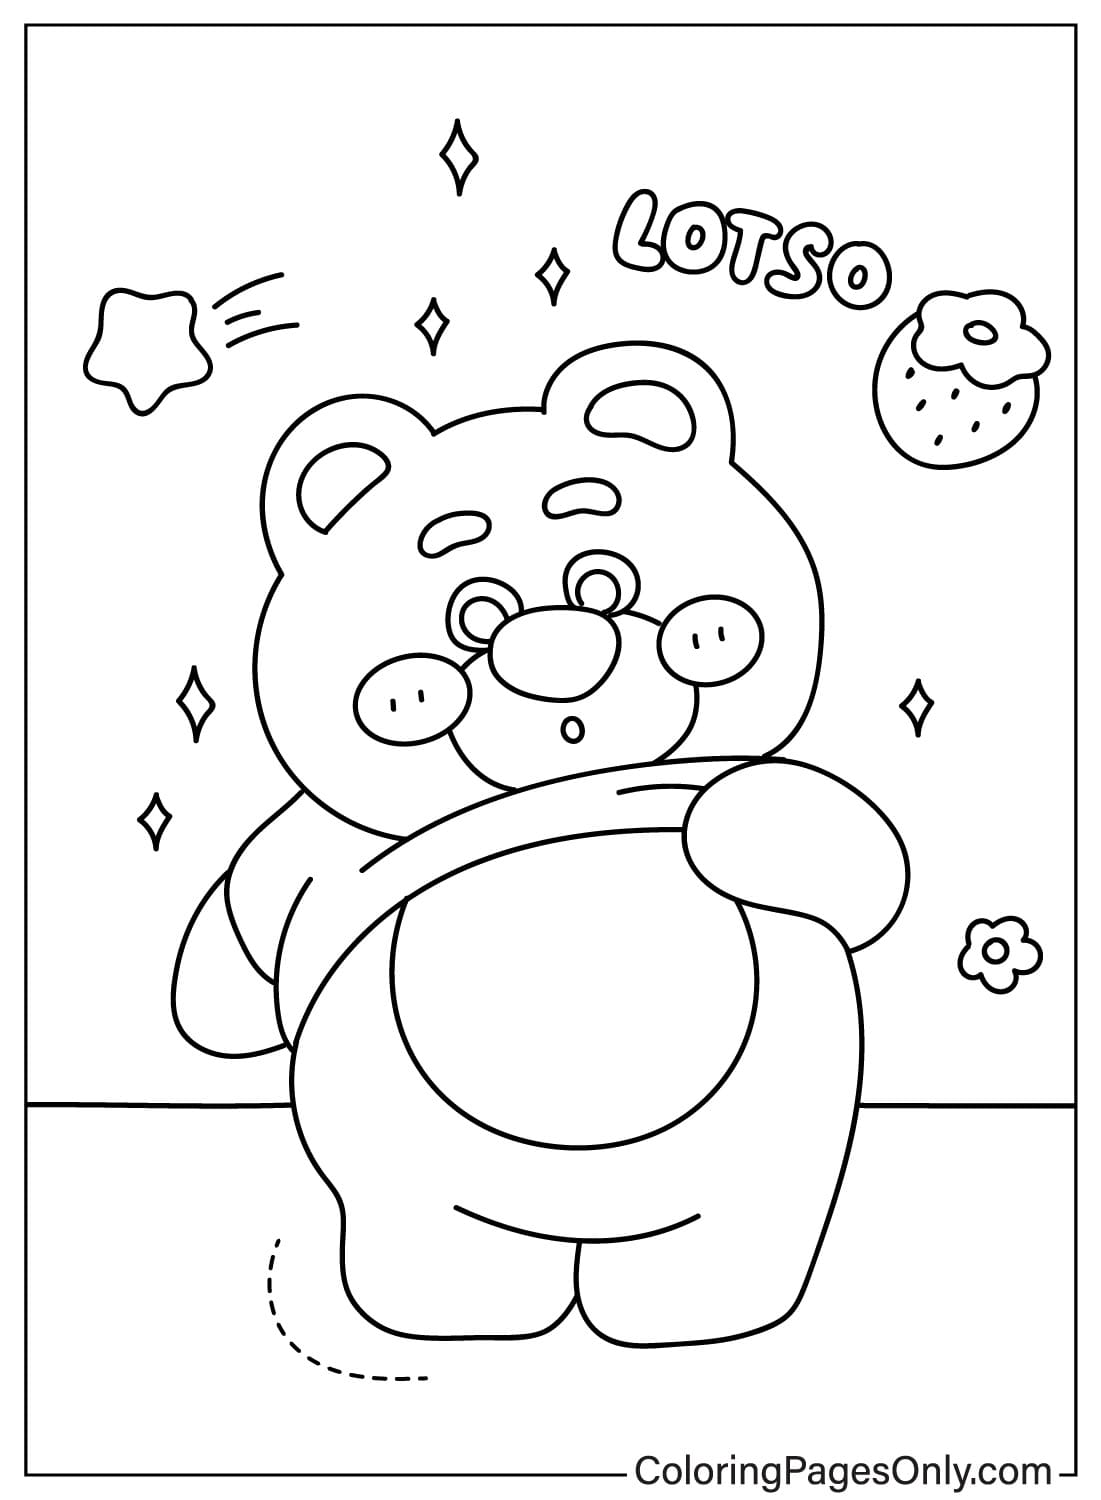 Afbeeldingen Lotso beer kleurplaat van Lotso Bear